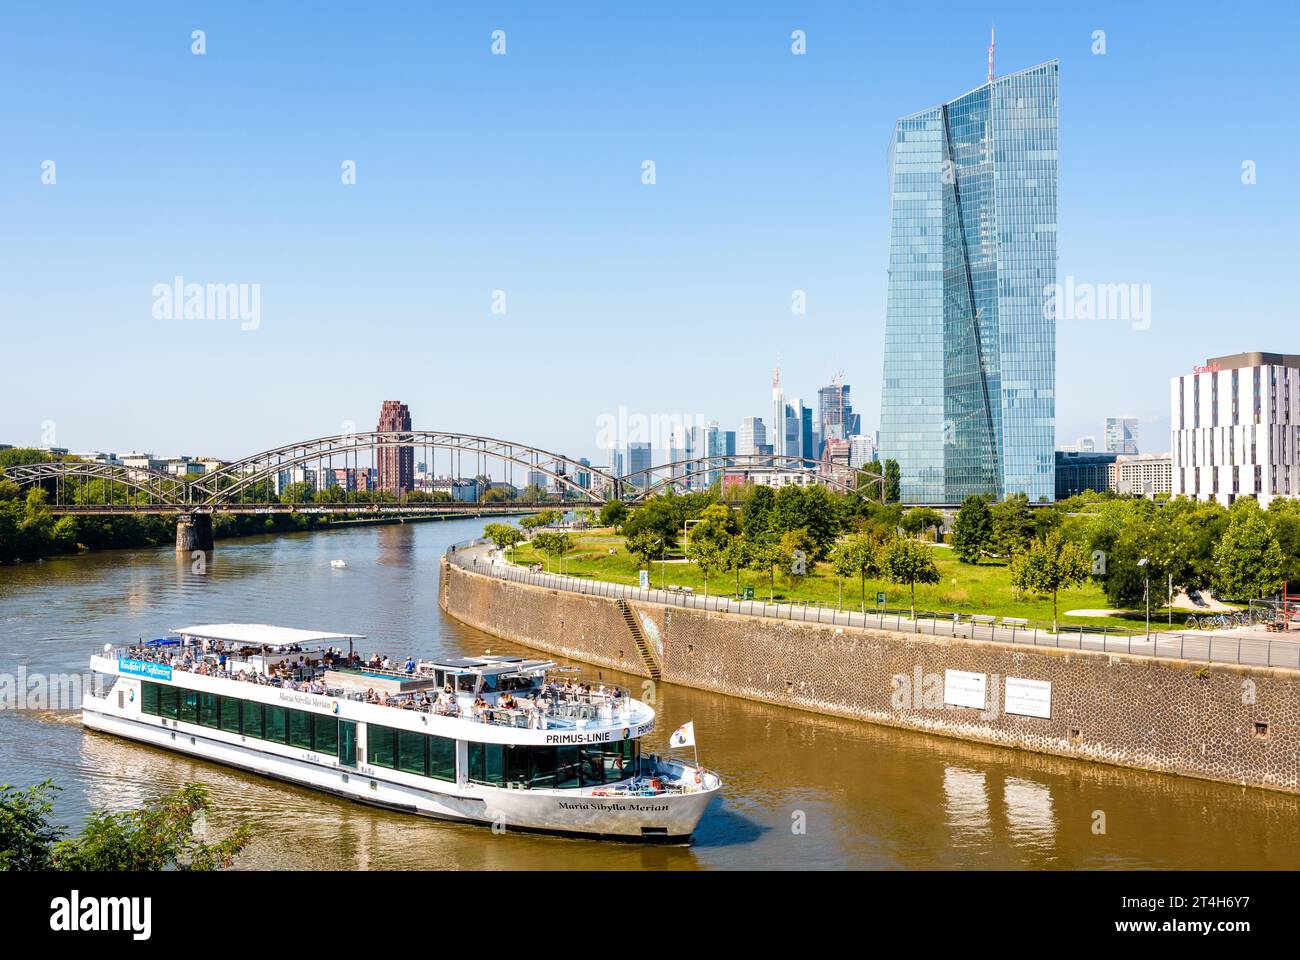 Le bâtiment Skytower à Francfort, en Allemagne, siège de la Banque centrale européenne avec un bateau fluvial touristique et les gratte-ciel du quartier financier Banque D'Images